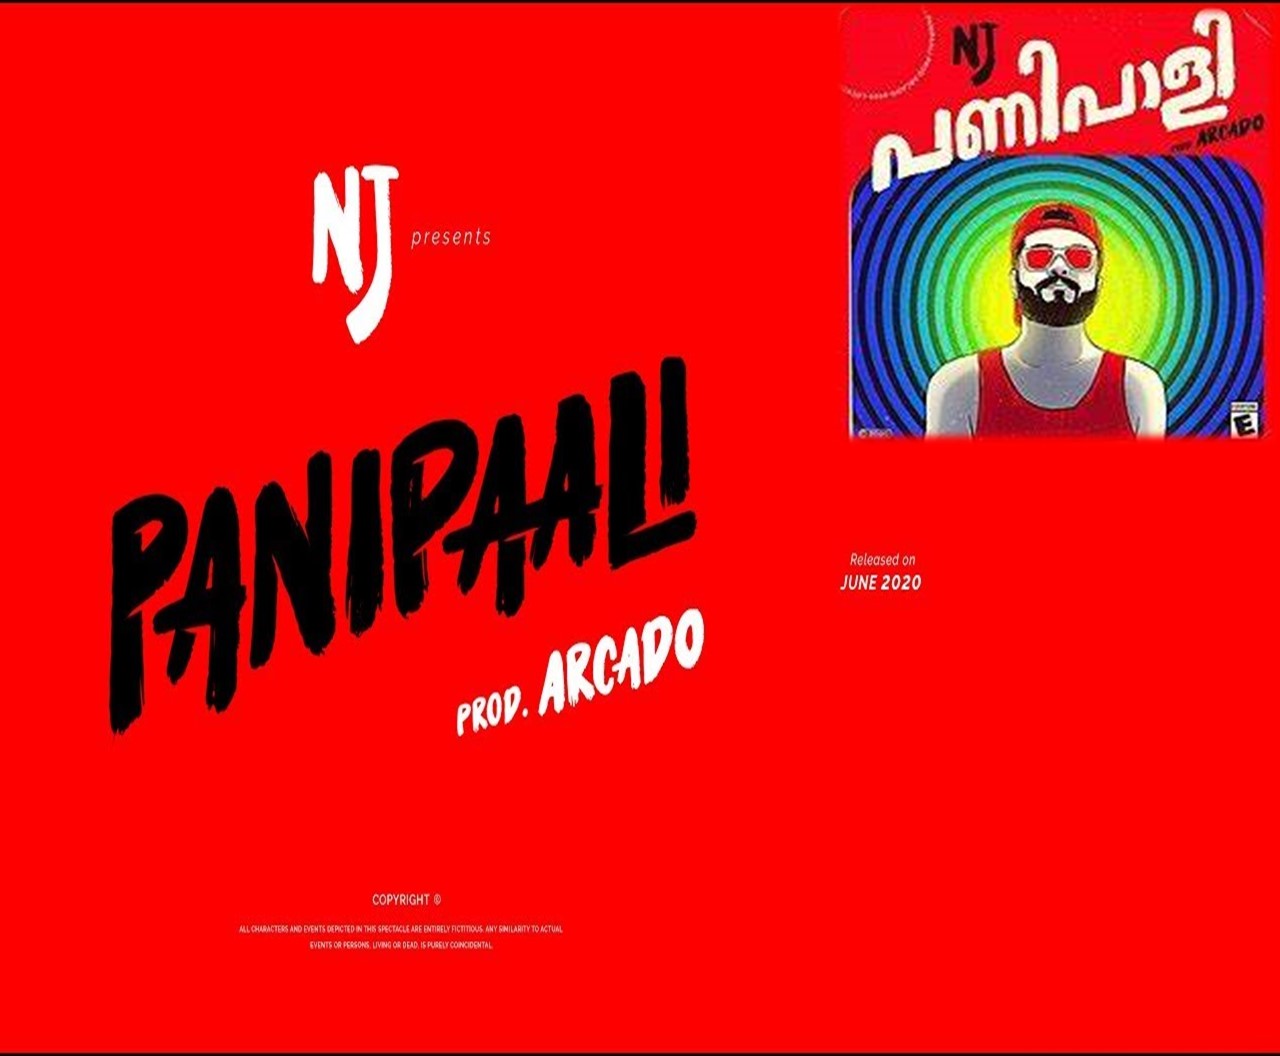 Malayalam Rap 'Pani Paali